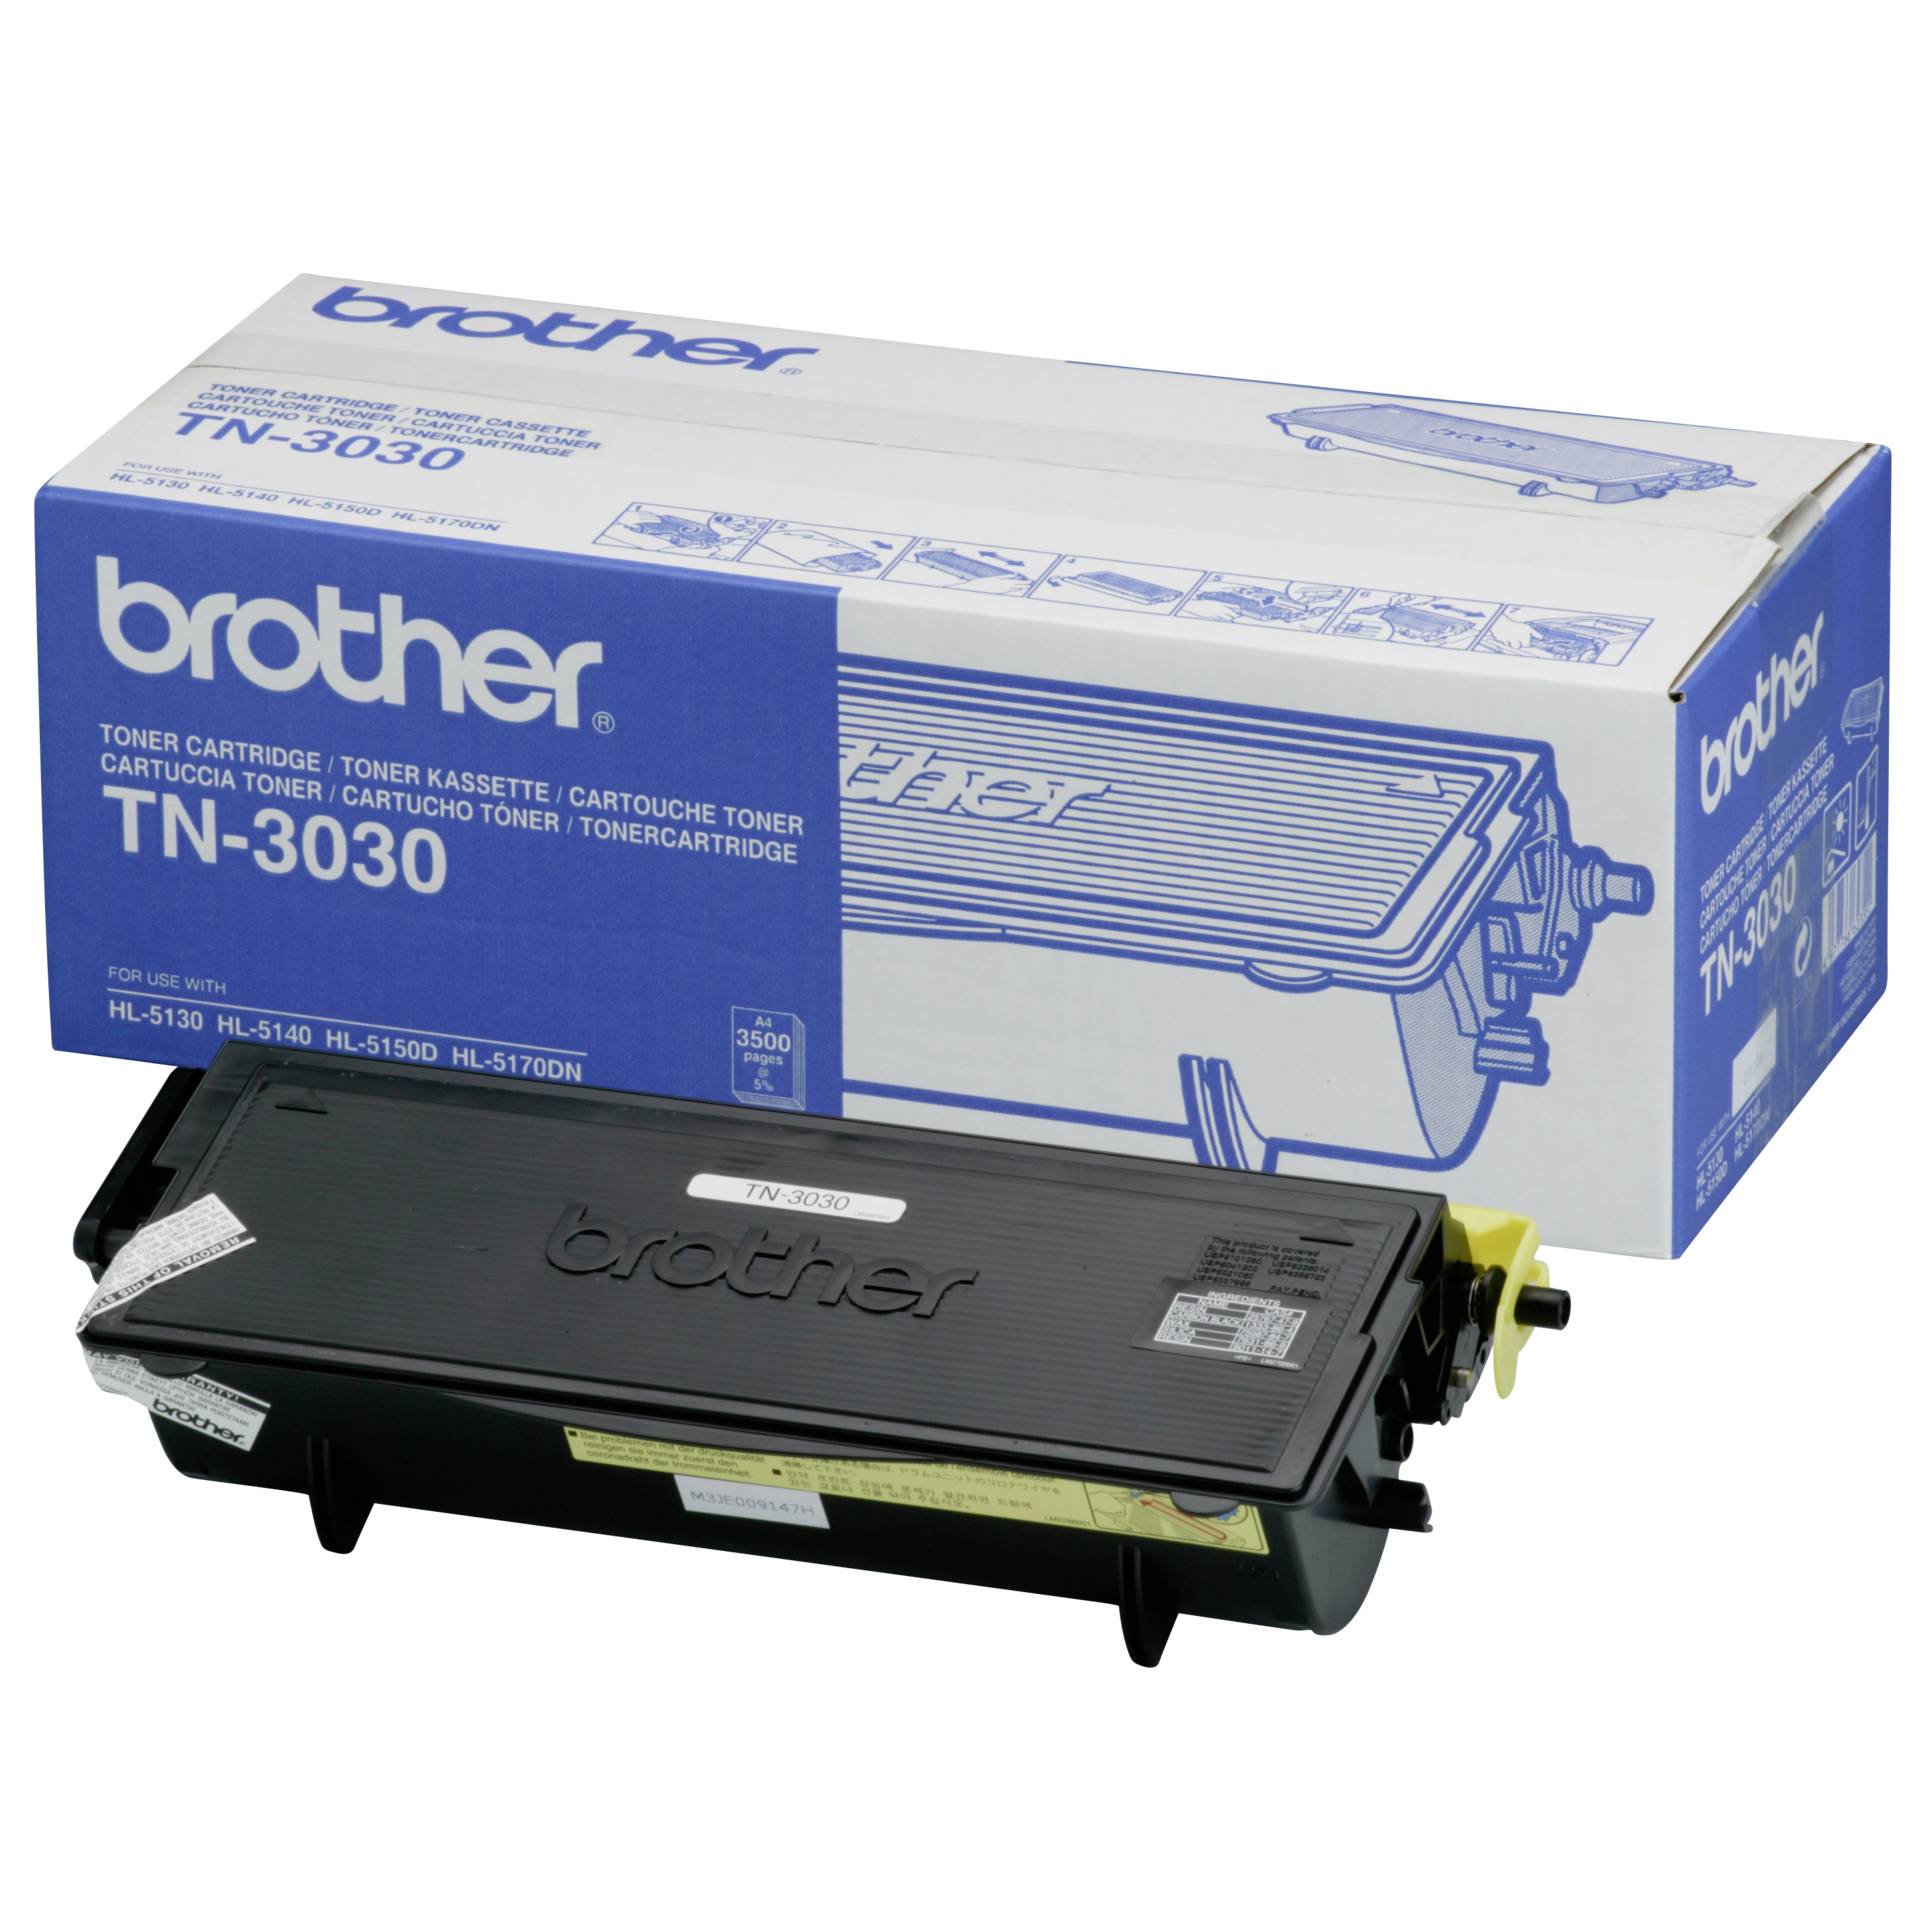 Brother TN-3030 cartuccia nero